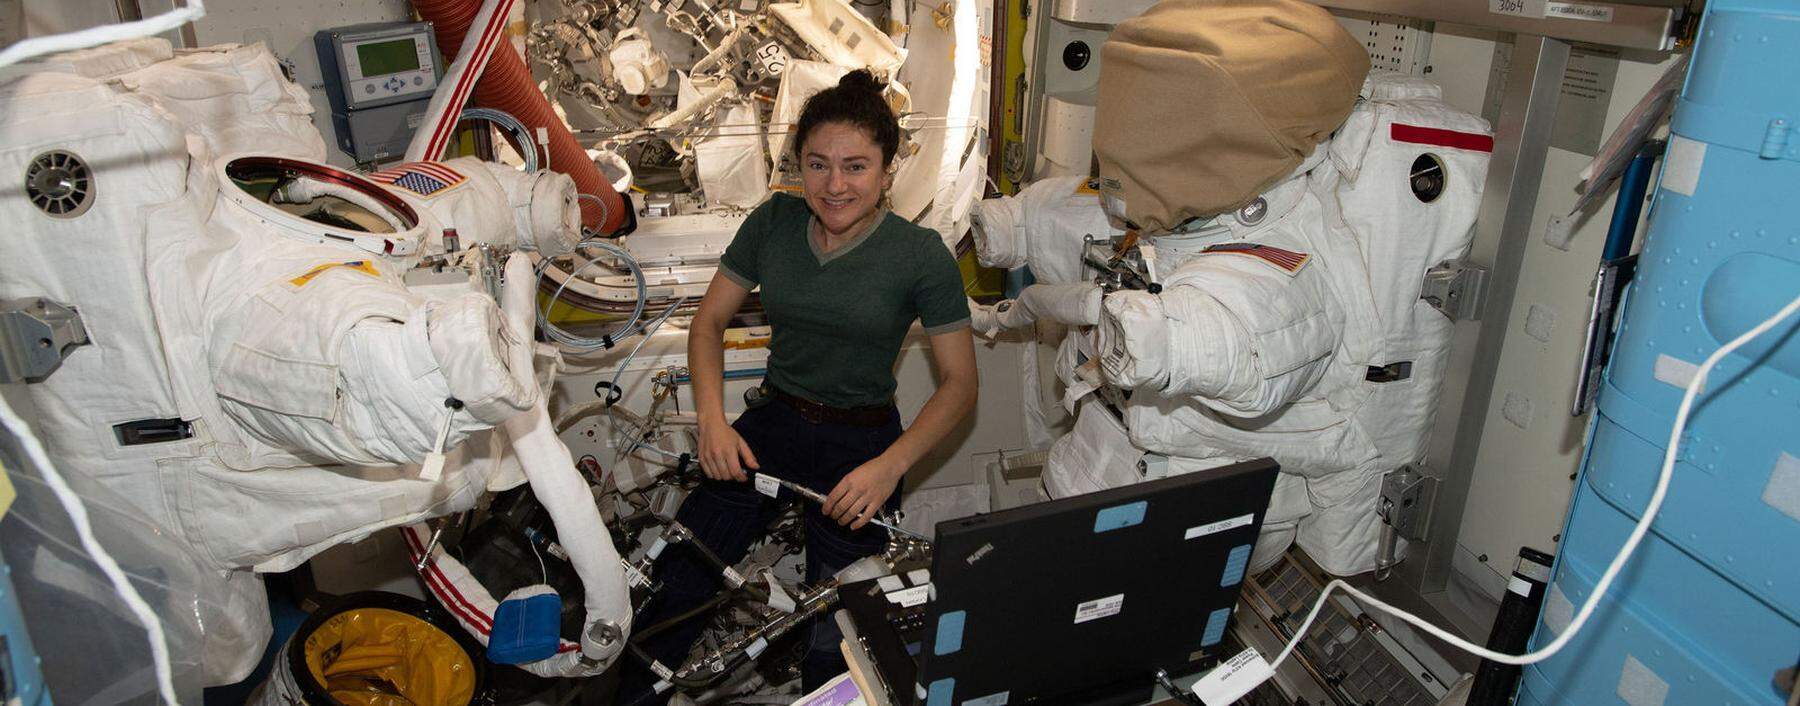 Eine der wenigen Astronautinnen ist Jessica Meir, die derzeit für die Nasa in der Internationalen Raumstation ISS lebt und forscht.